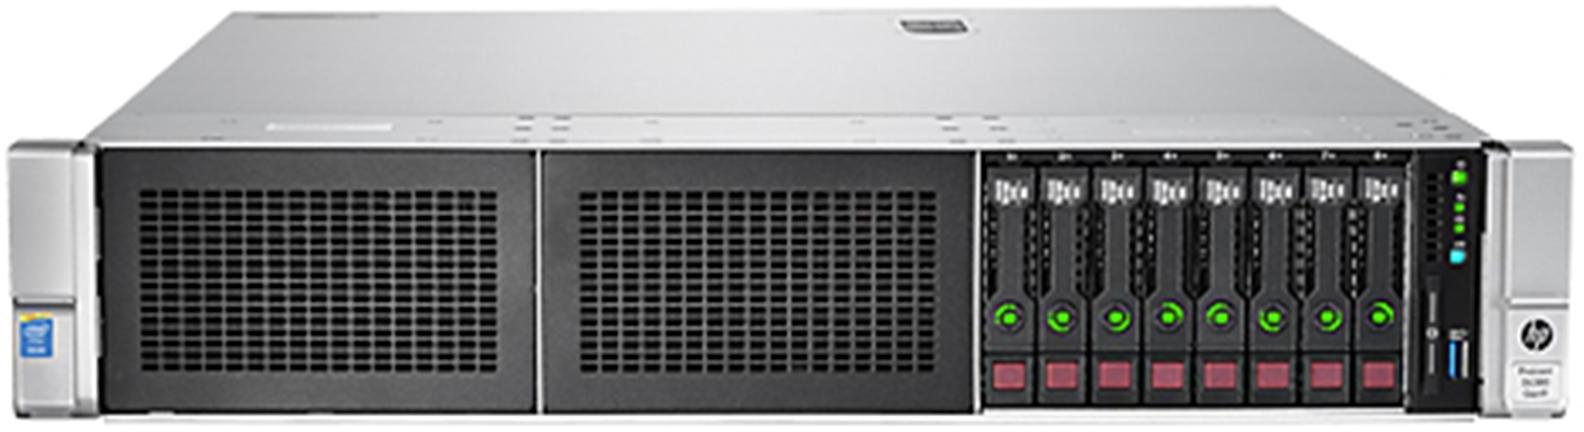 Купить Сервер в стойку HP ProLiant DL380 G9 (826684-B21) фото 1